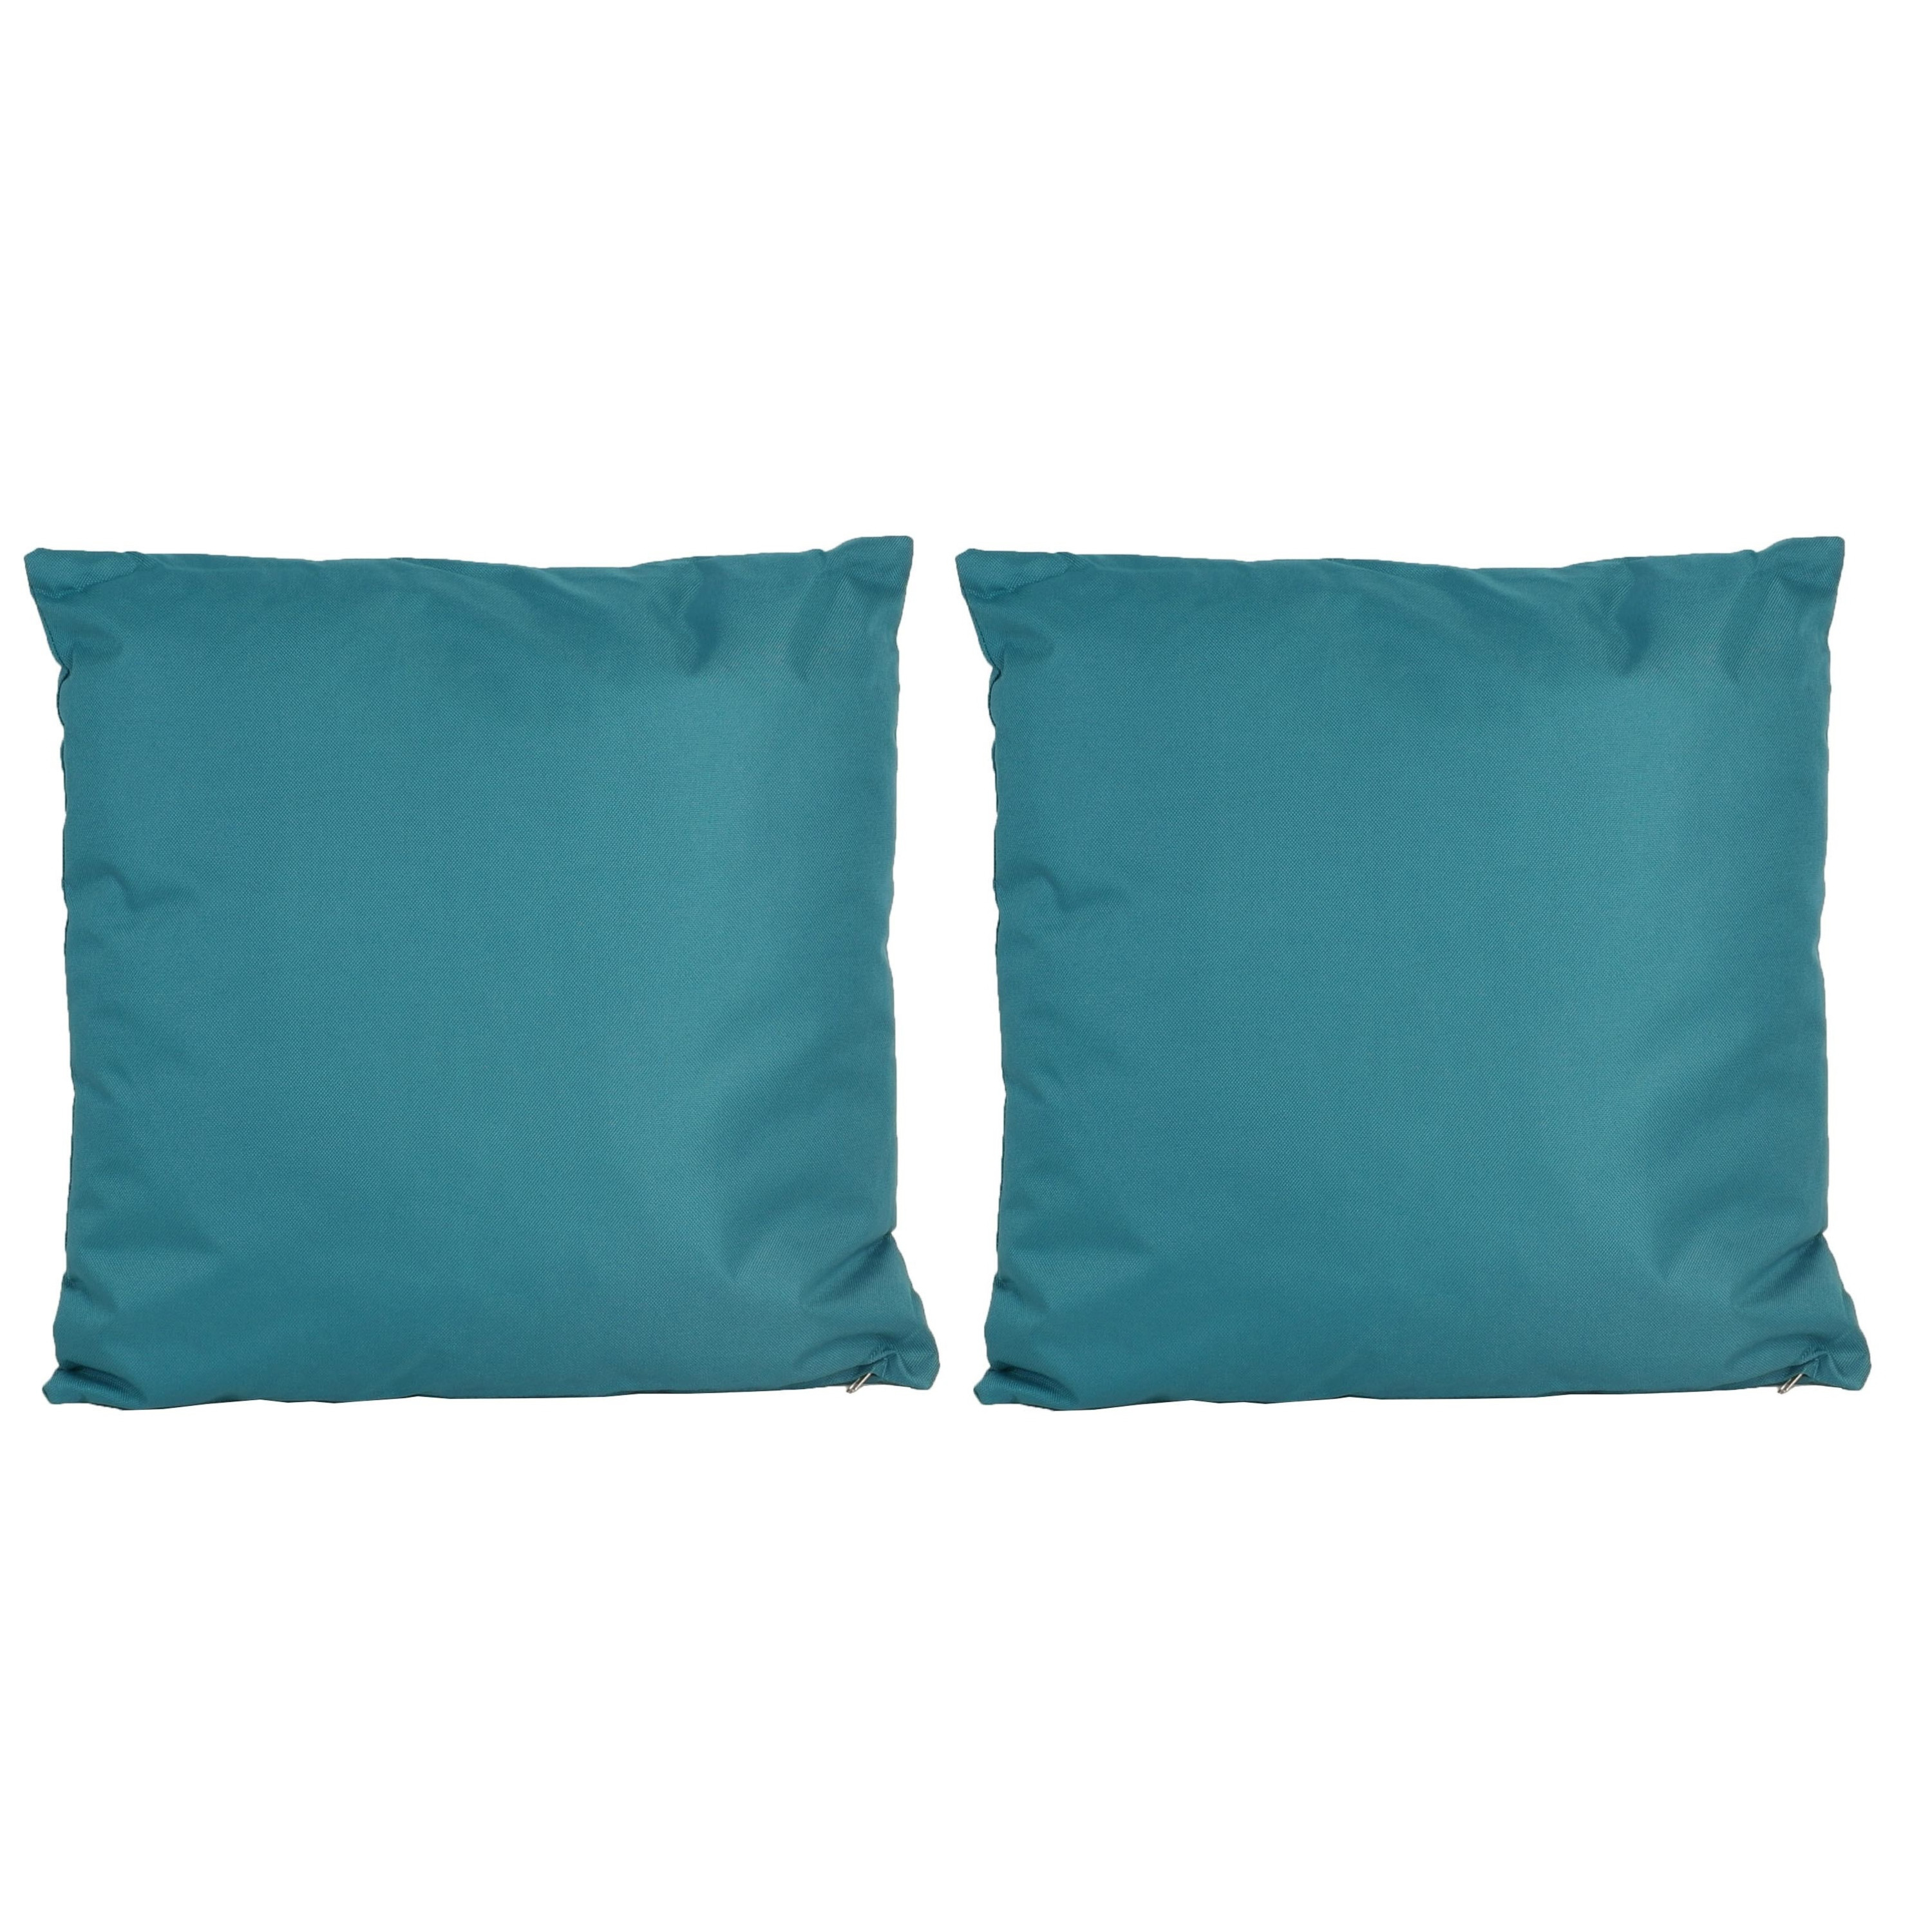 4x Bank-sier kussens voor binnen en buiten in de kleur petrol blauw 45 x 45 cm